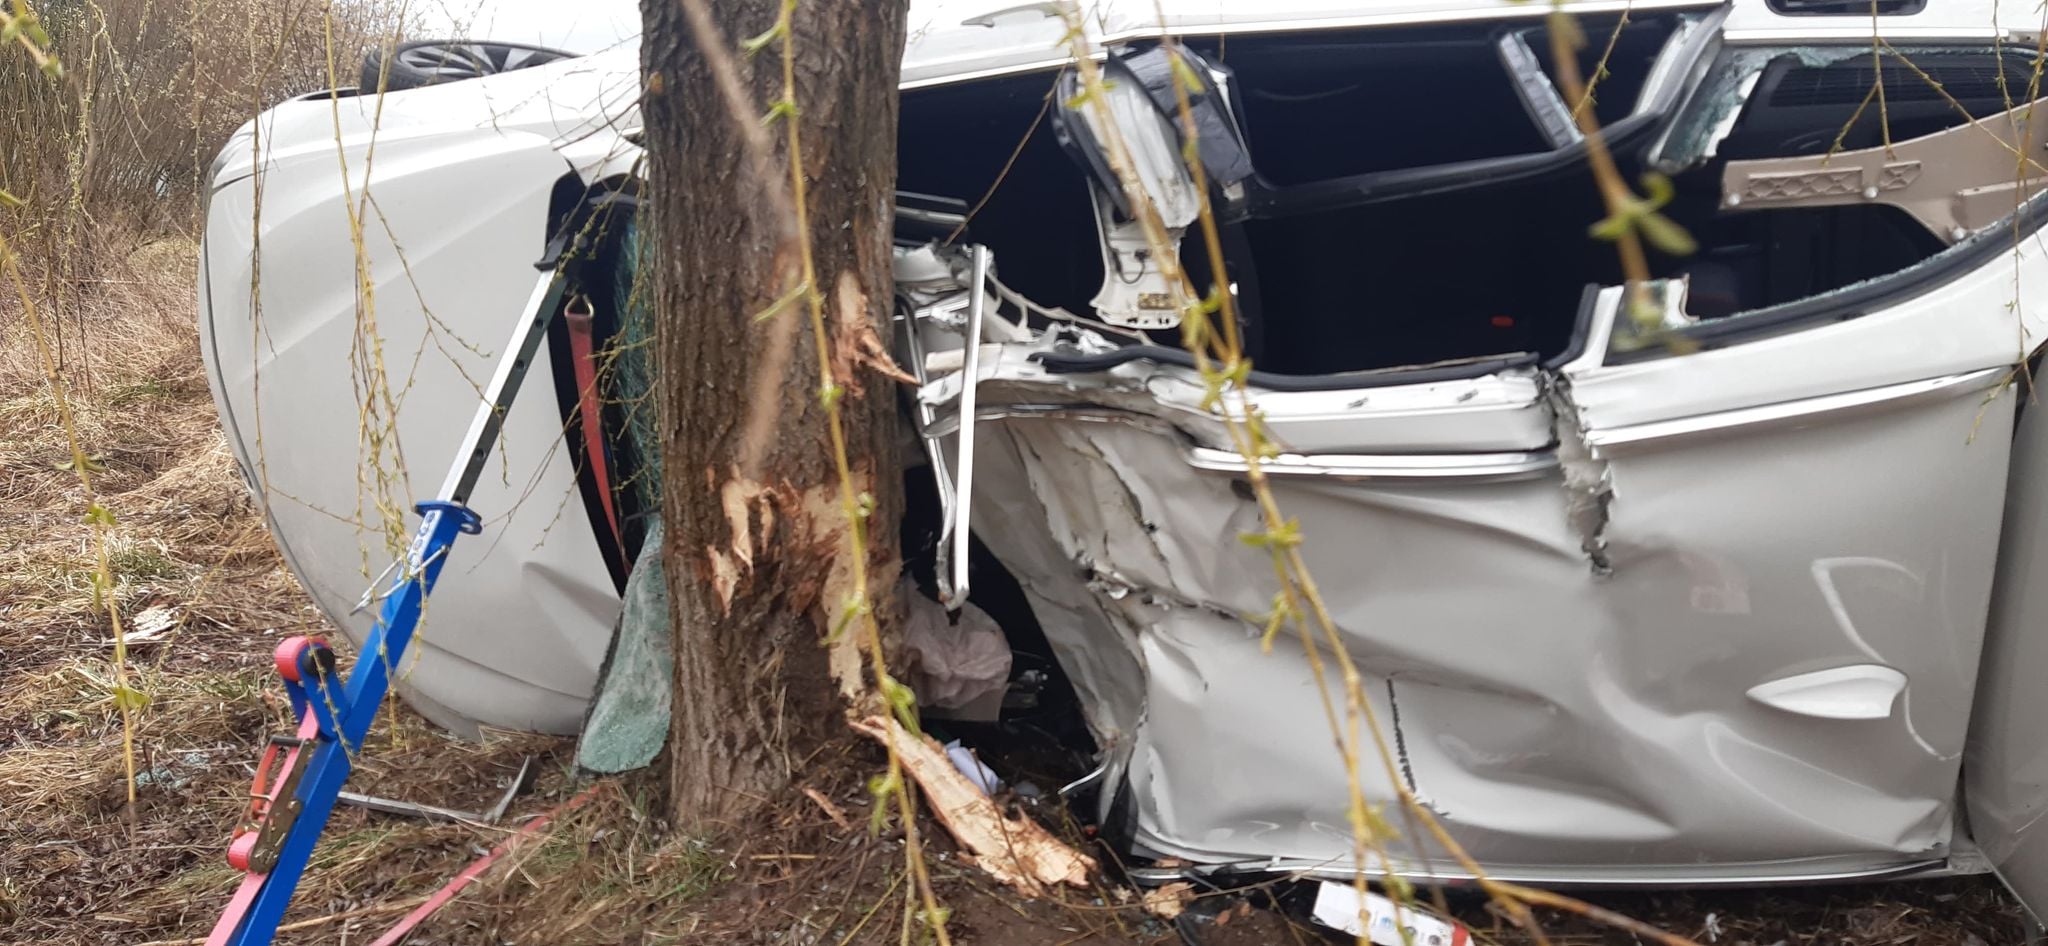 BMW wypadło z drogi i uderzyło w drzewo. Kierowca był zakleszczony w pojeździe (zdjęcia)